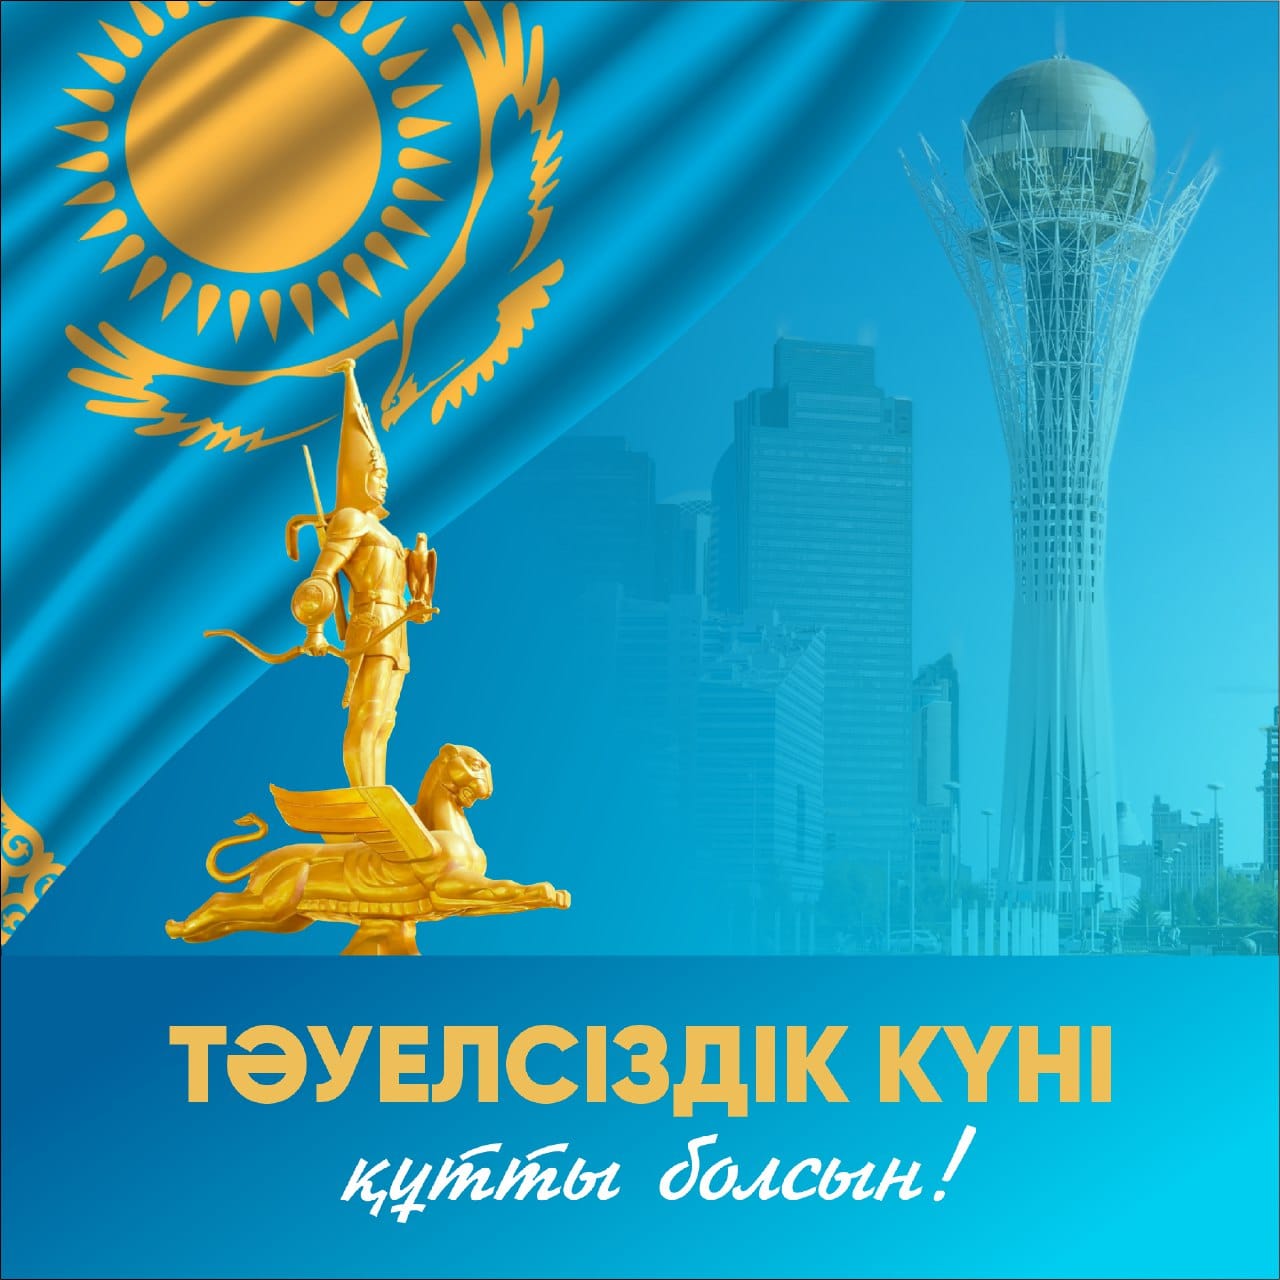 16 декабрь-Қазақстан Республикасының Тәуелсіздік күні/16 декабря - День Независимости Республики Казахстан